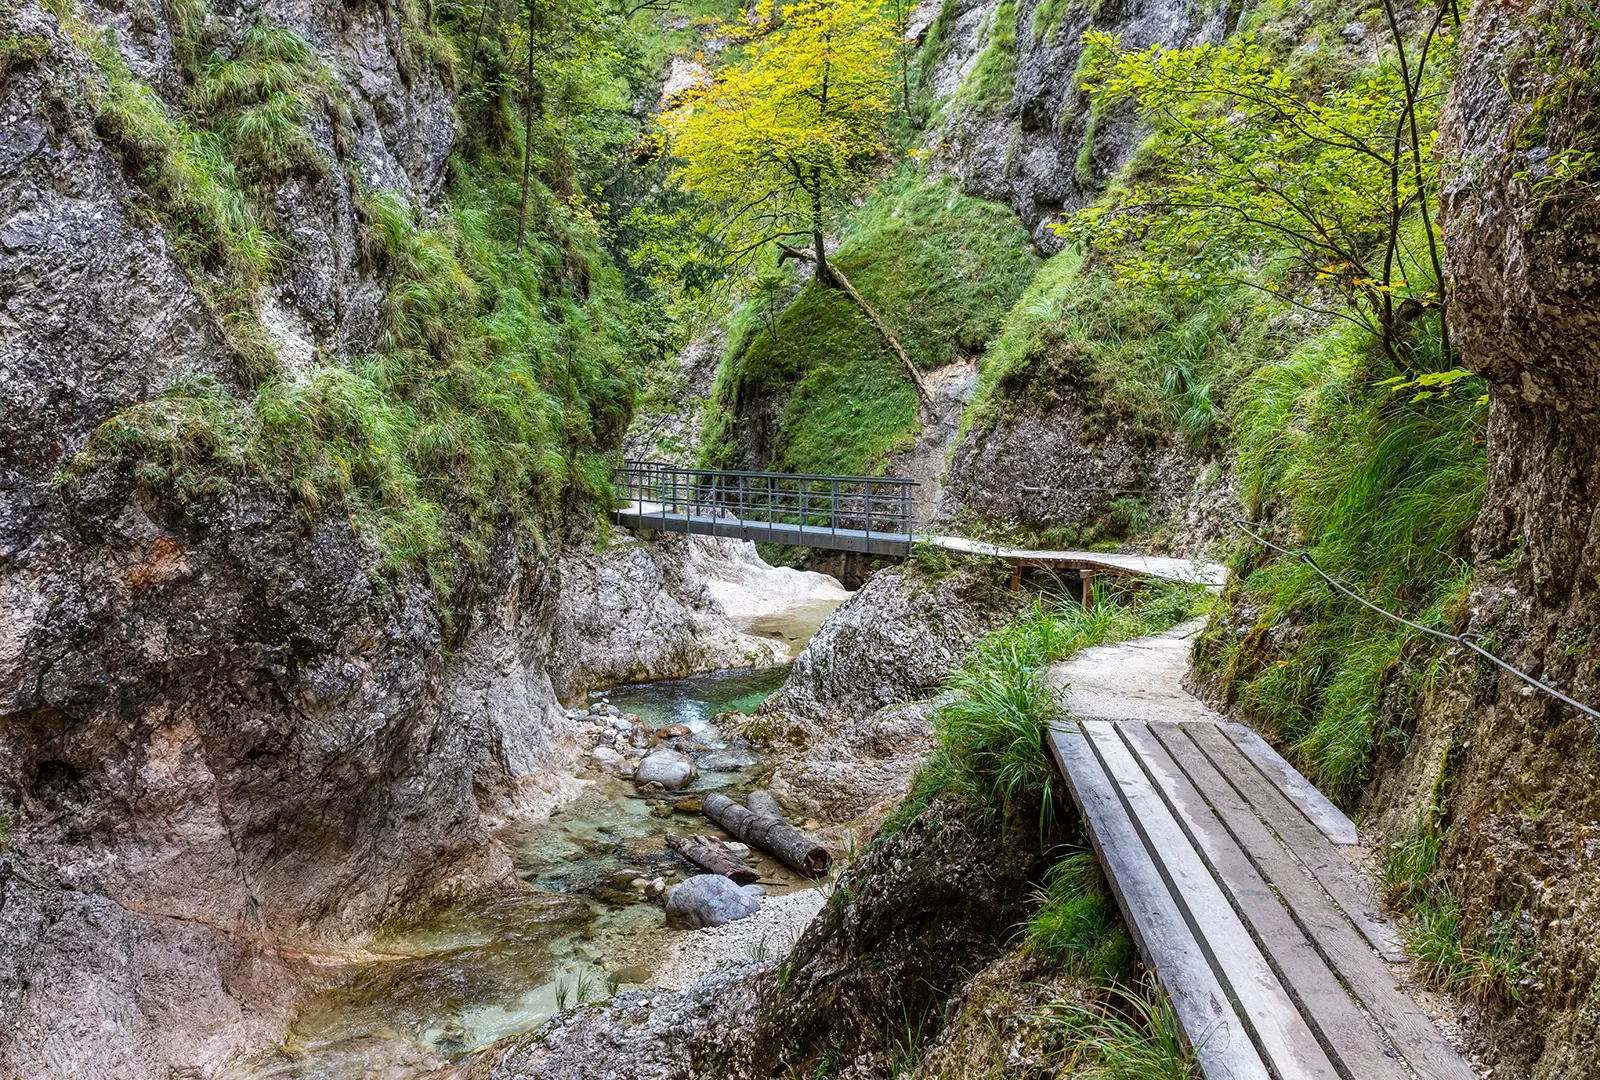 a winding bridge through mountains